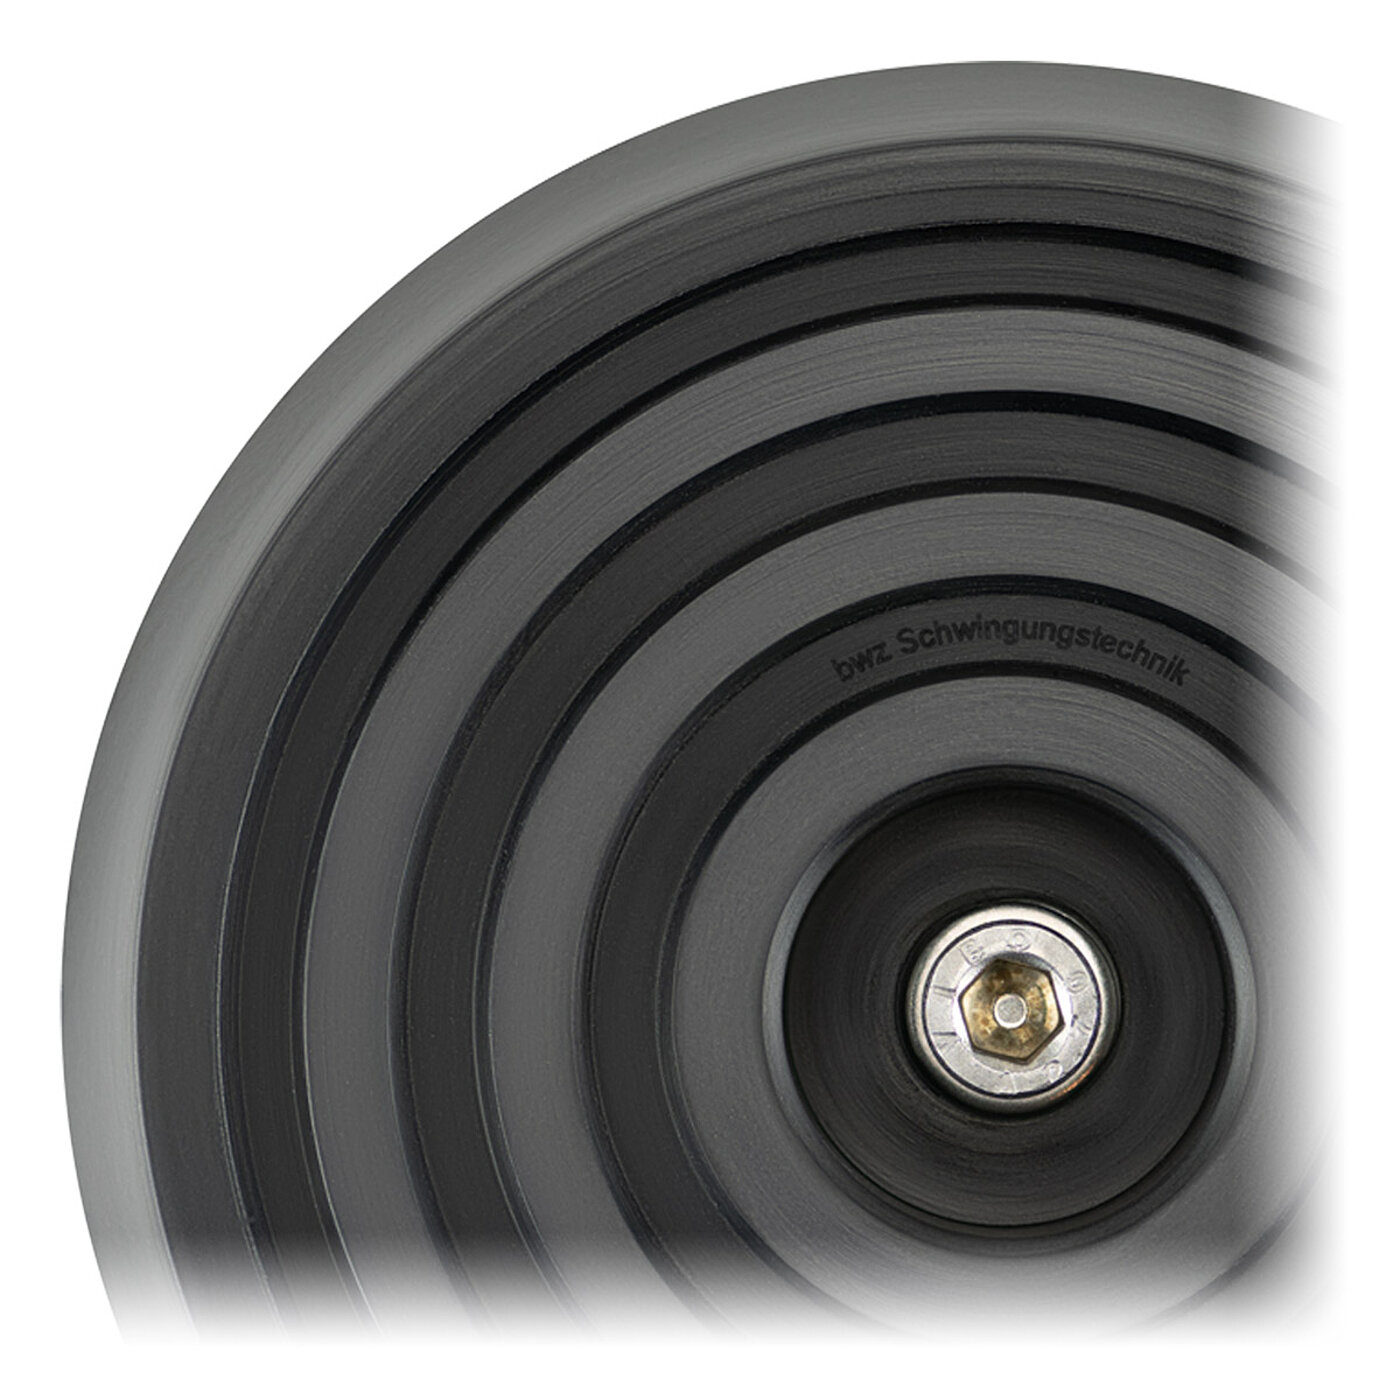 Ansicht der schwarzen Elastomer-Unterseite eines bwz Schwingungstechnik® Nivellierelementes mit 4 konzentrischen Ringen für Gleitschutz